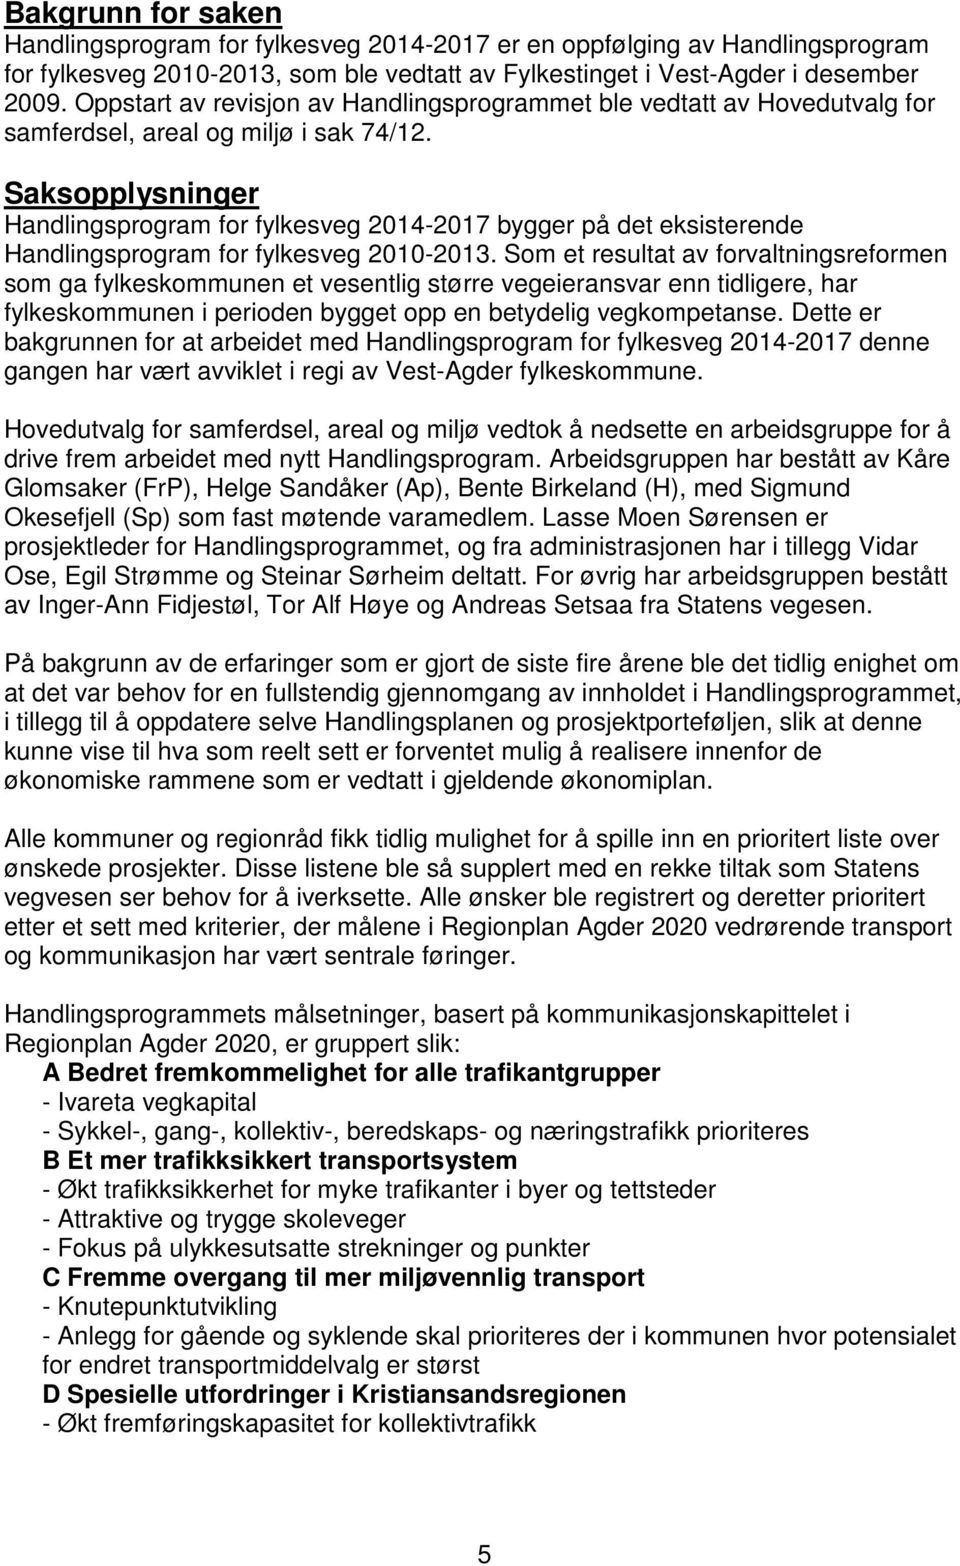 Saksopplysninger Handlingsprogram for fylkesveg 2014-2017 bygger på det eksisterende Handlingsprogram for fylkesveg 2010-2013.